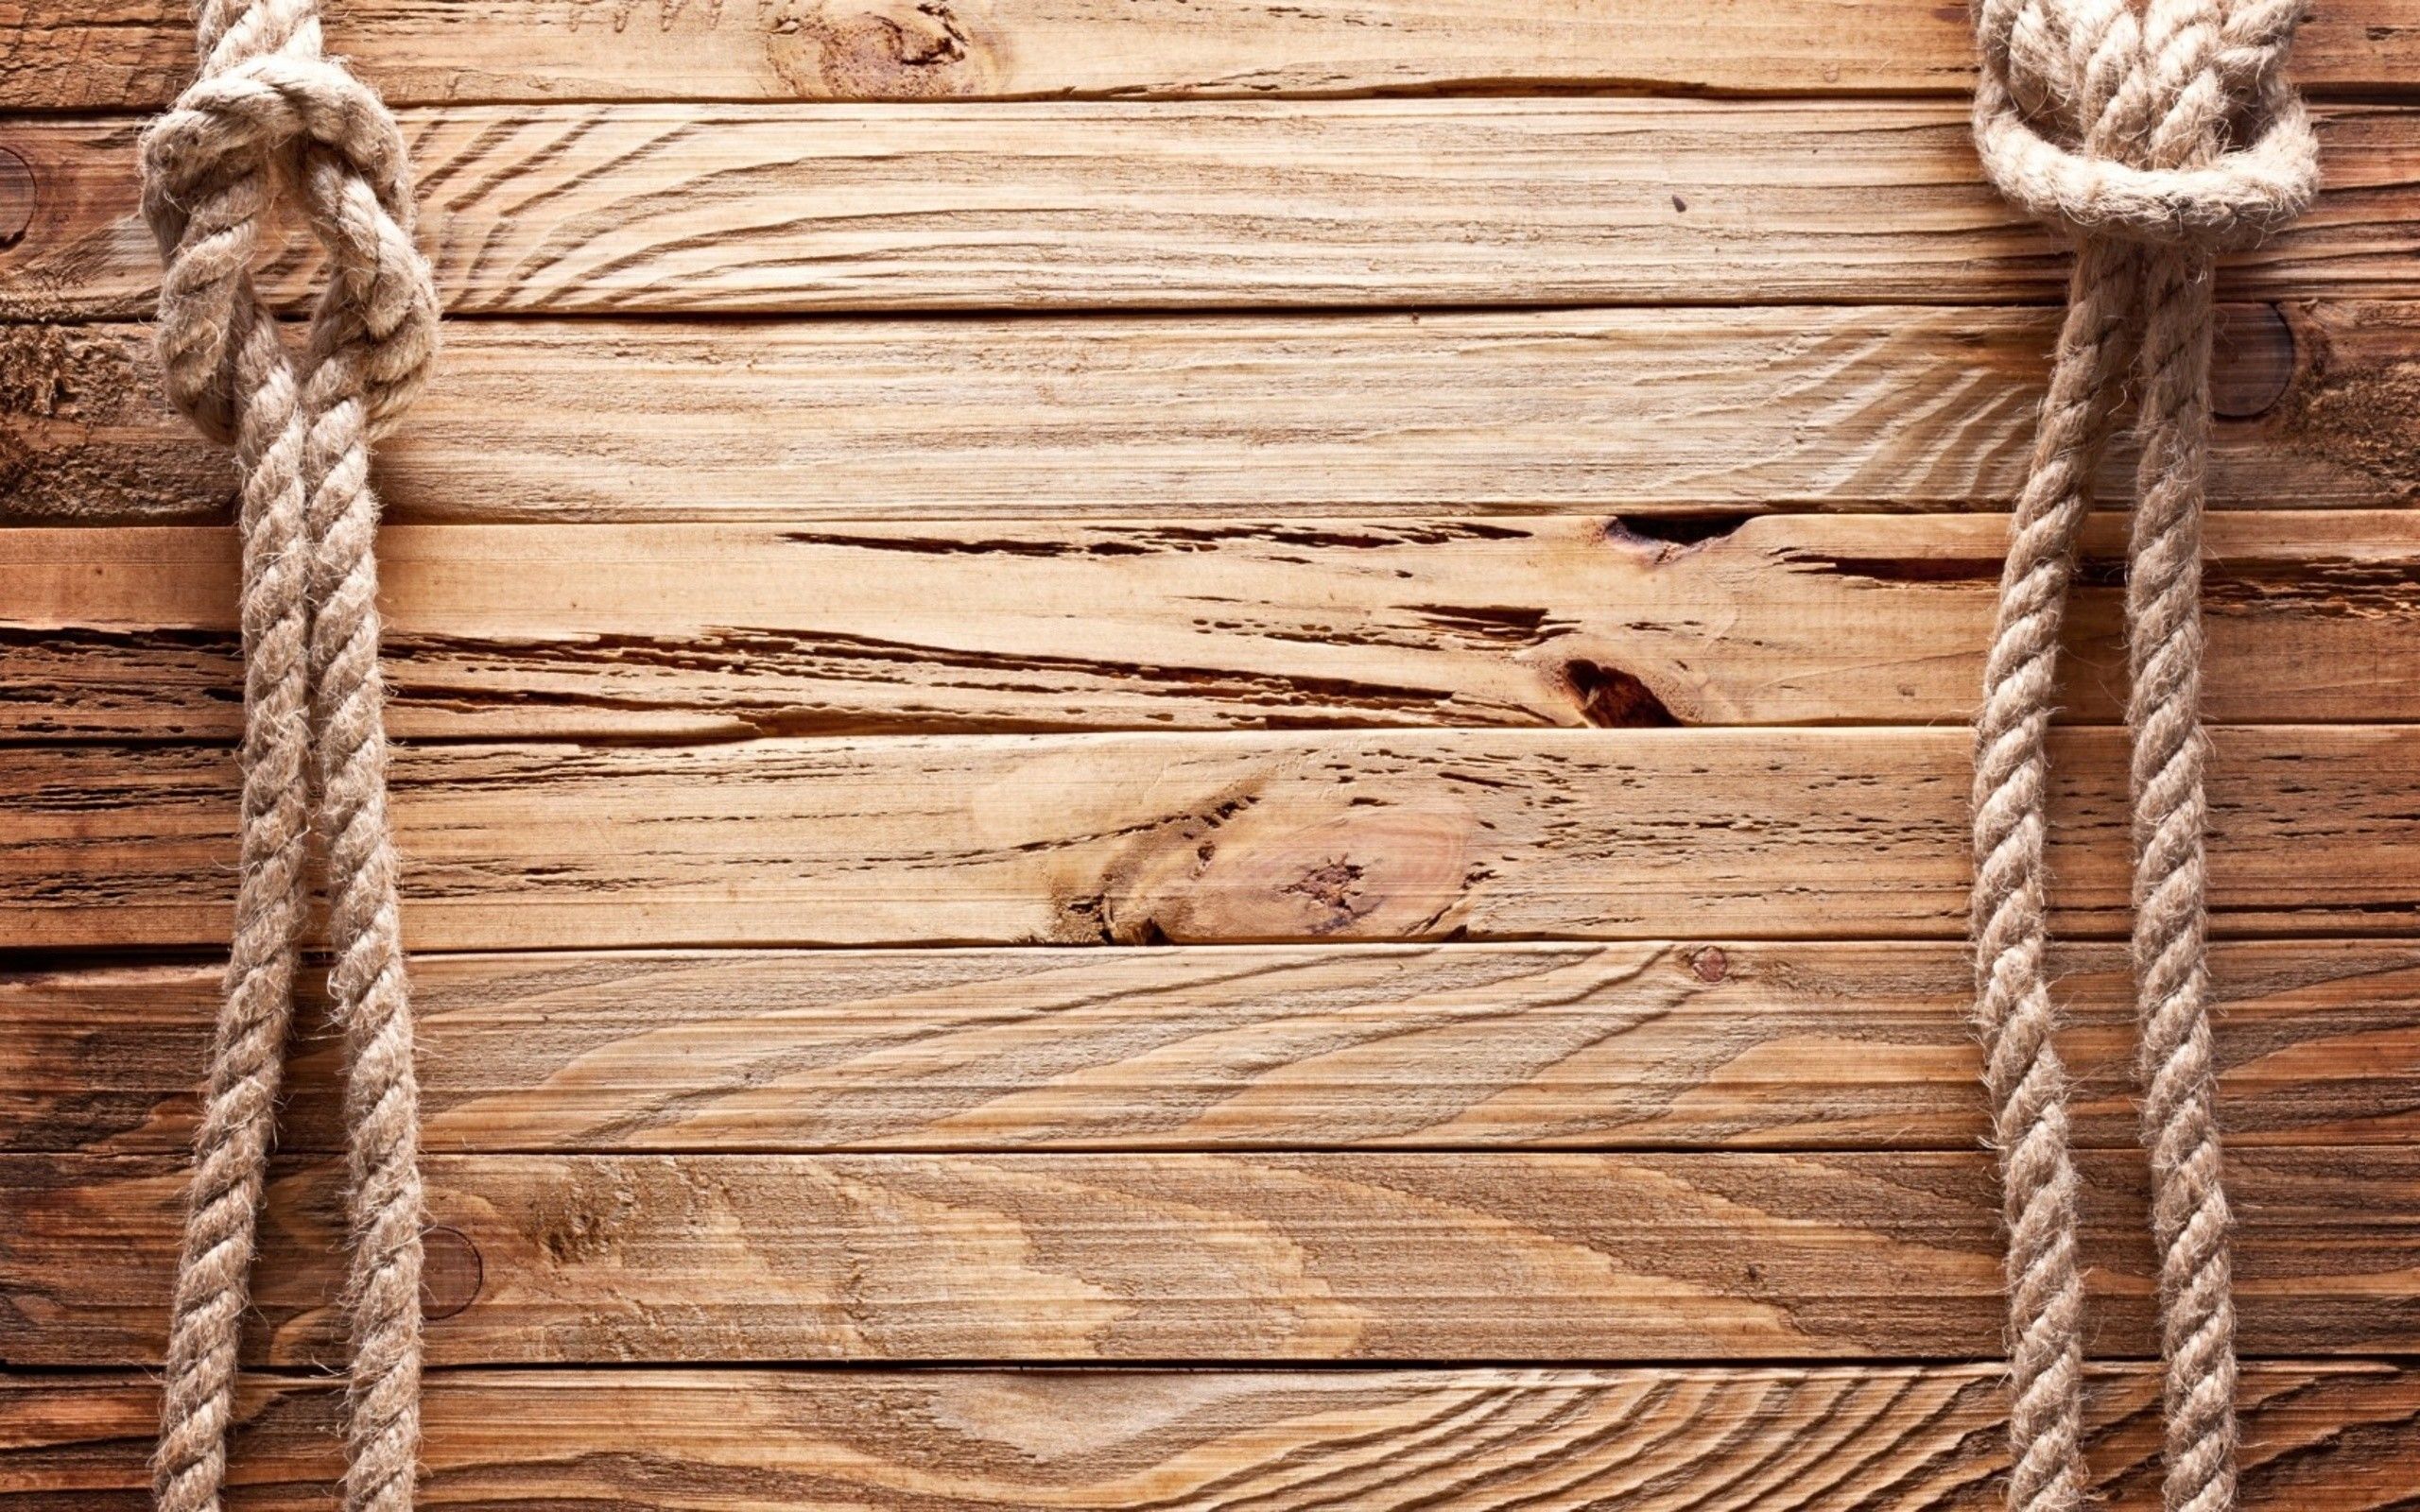  Holz Hintergrundbild 2560x1600. 7676 Holz Wallpaper 2560x1600 Xiaomi